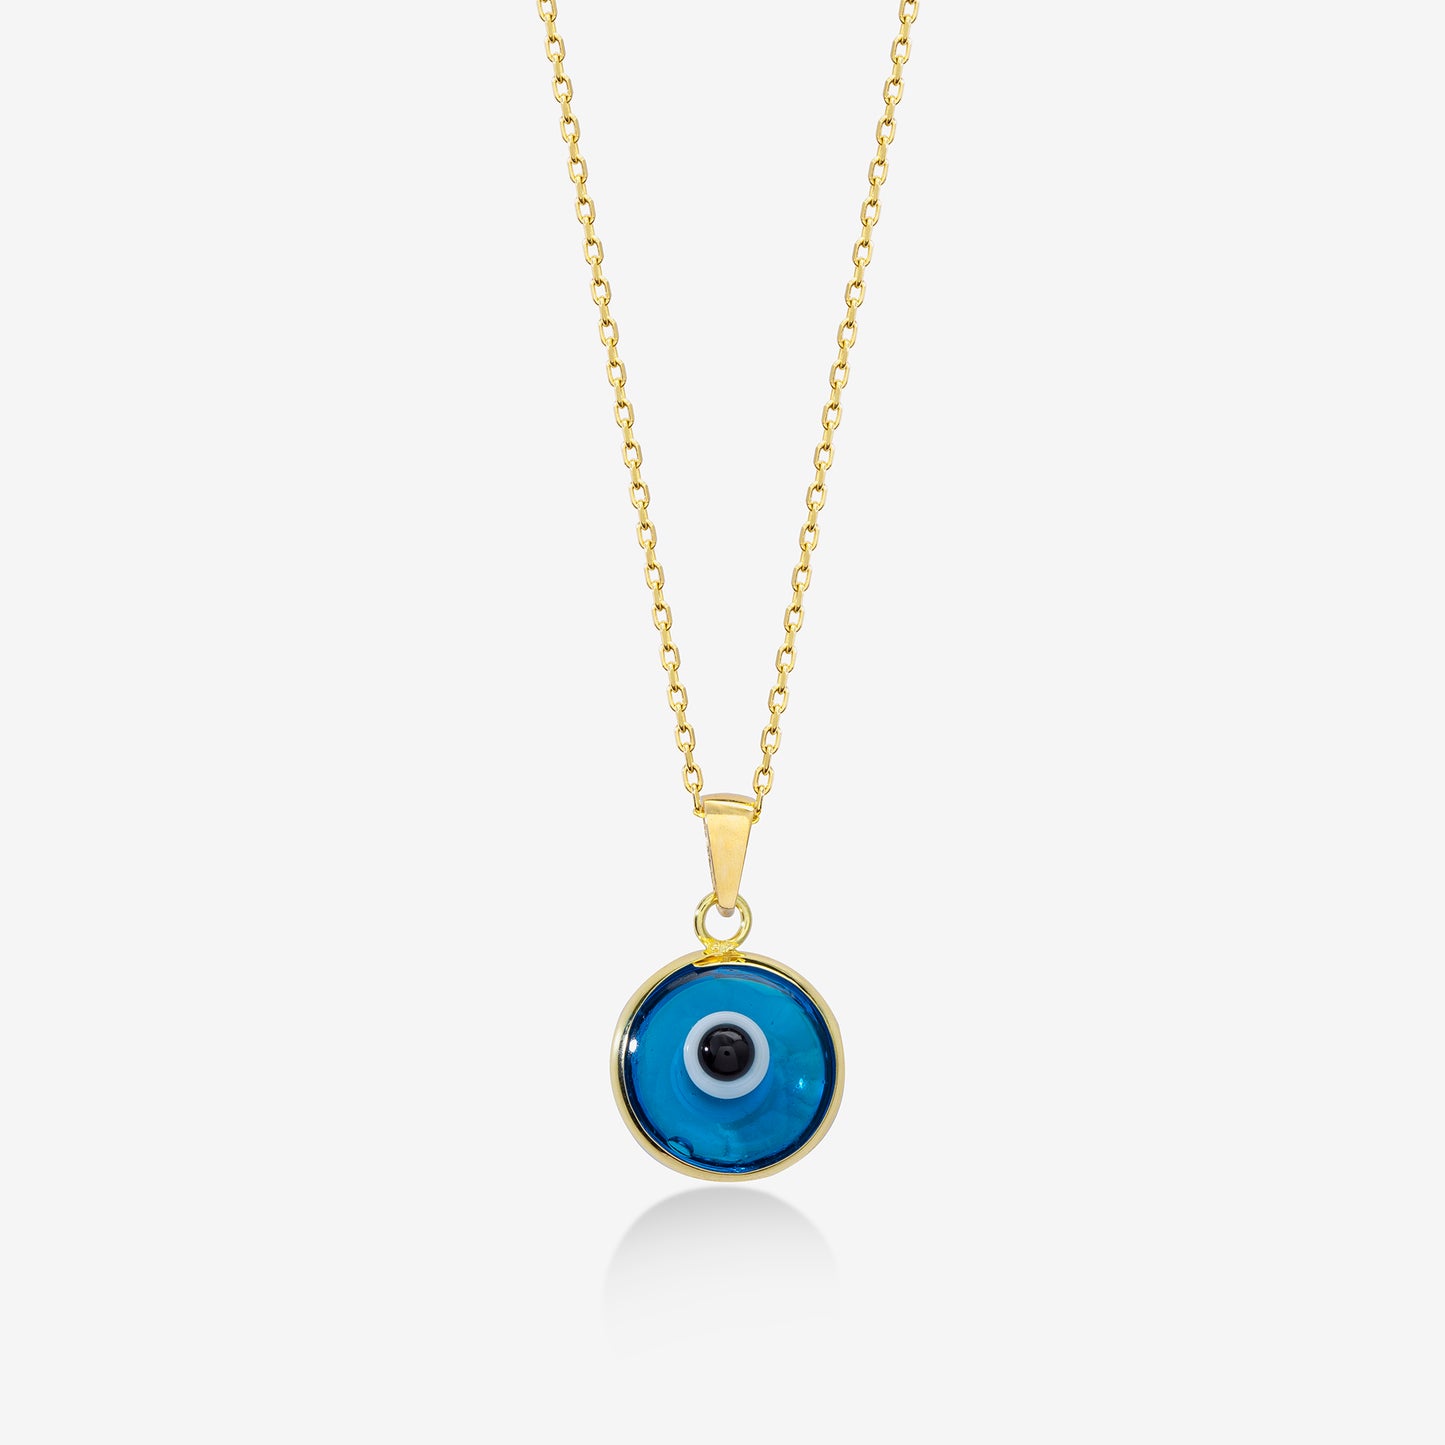 Blue Evil Eye Necklace in 14k Solid Gold